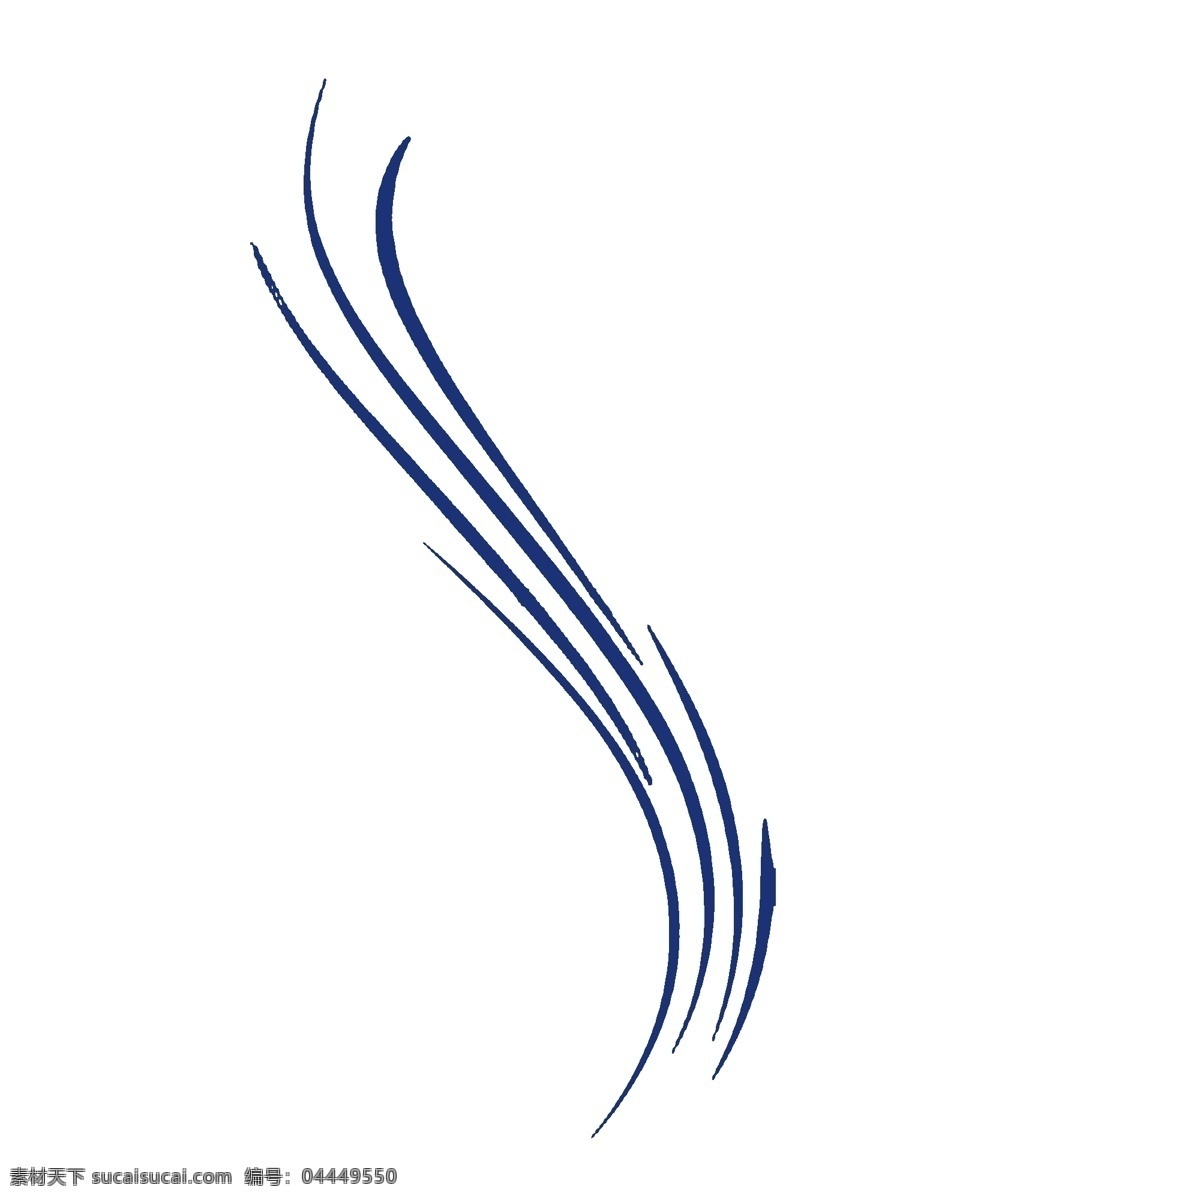 蓝色飘逸曲线 弧度线 柔和线条 柔和曲线 装饰曲线 飘逸曲线 线条 波浪线 蓝色 海浪线条